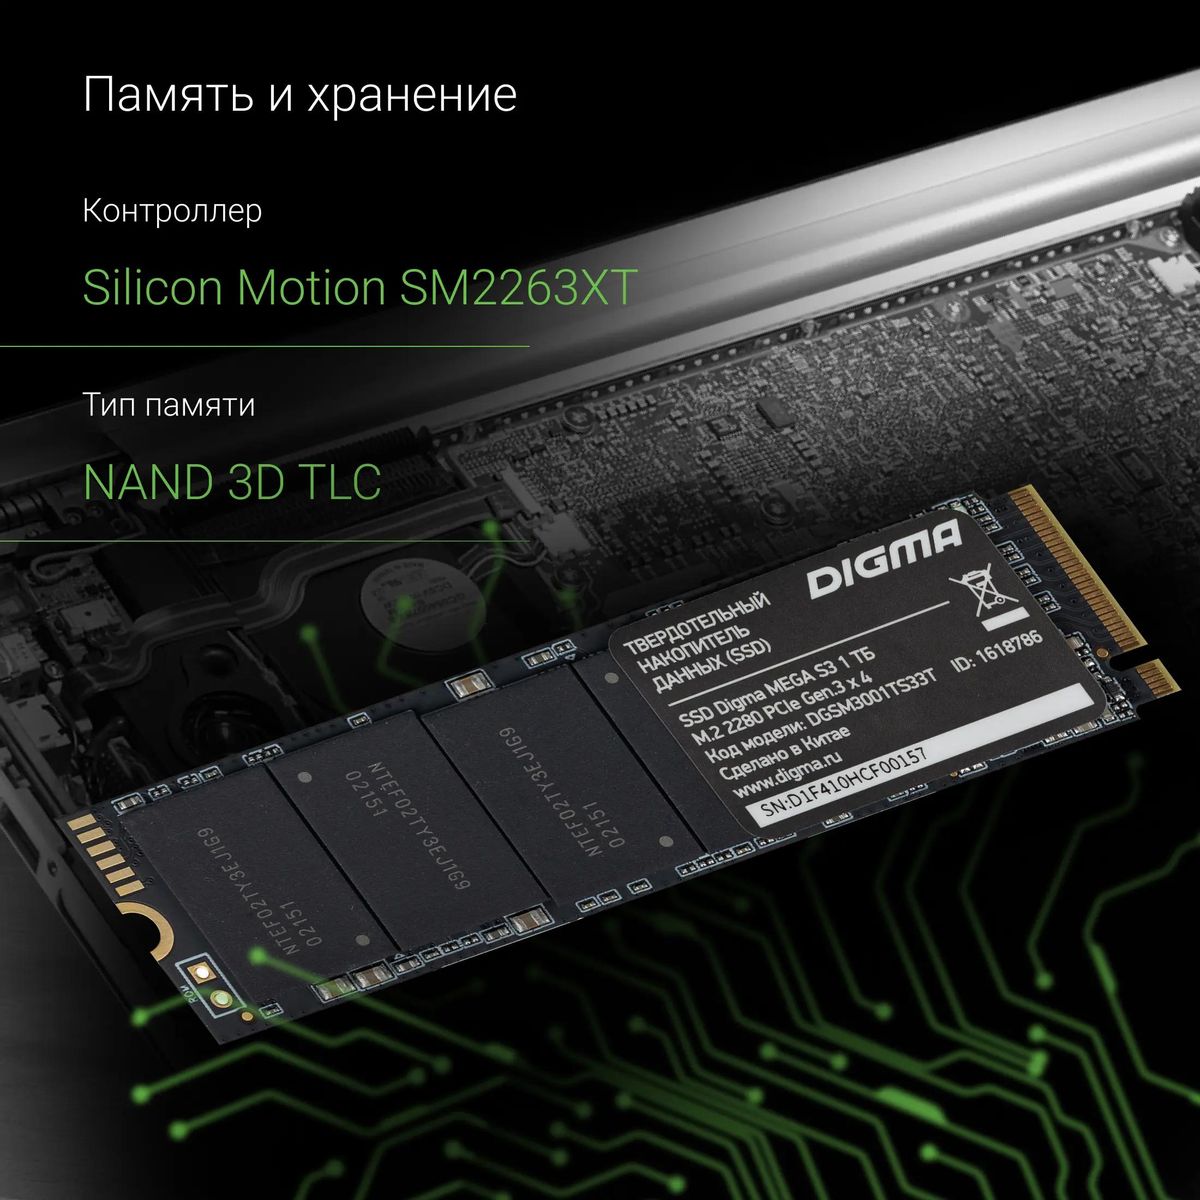 SSD накопитель Digma Mega S3 DGSM3001TS33T 1ТБ